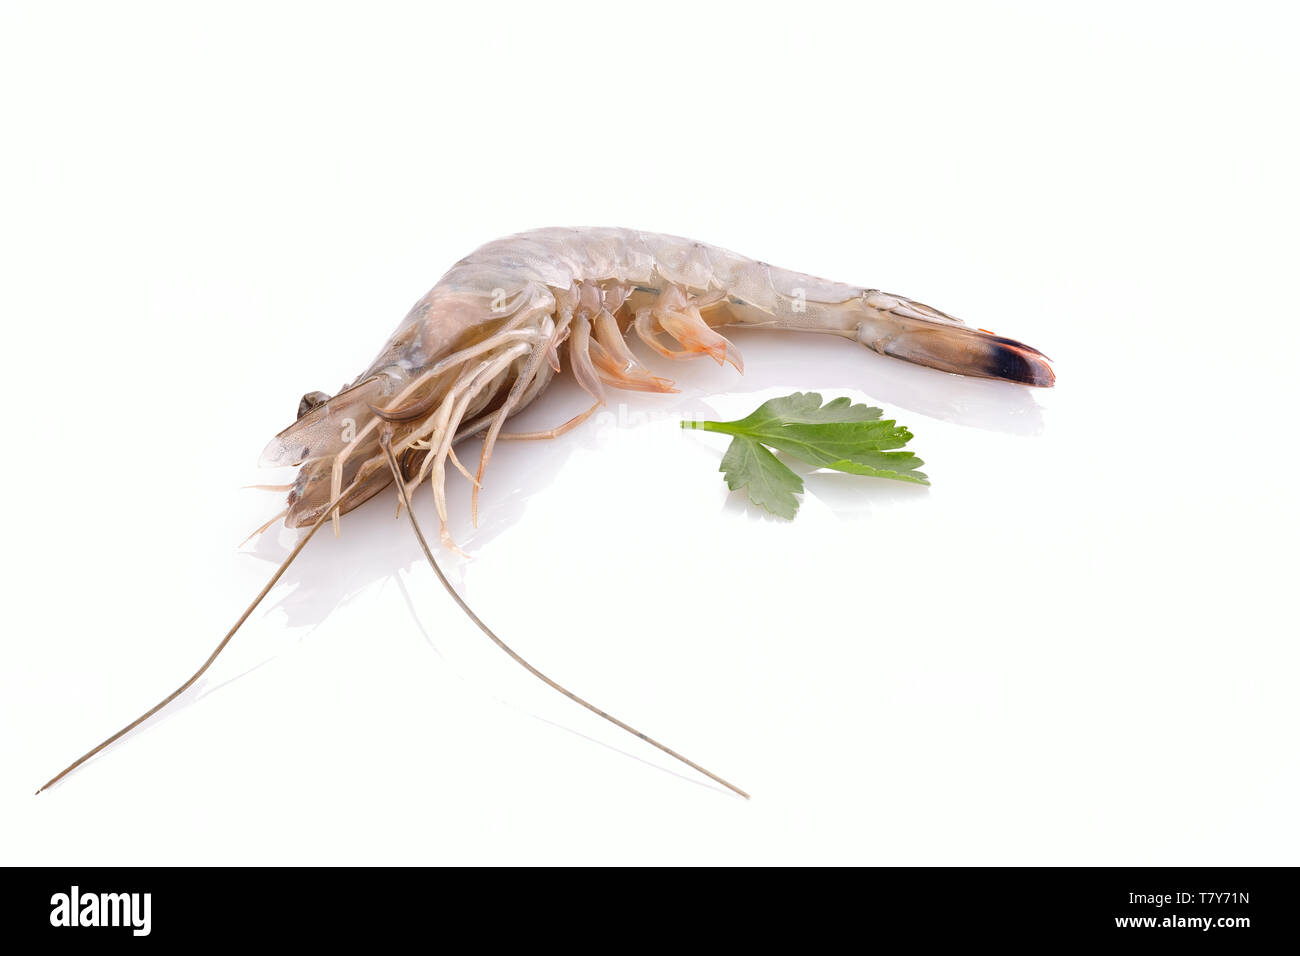 Krebstiere Garnelen und Meeresfrüchte weiß isoliert Stockfoto